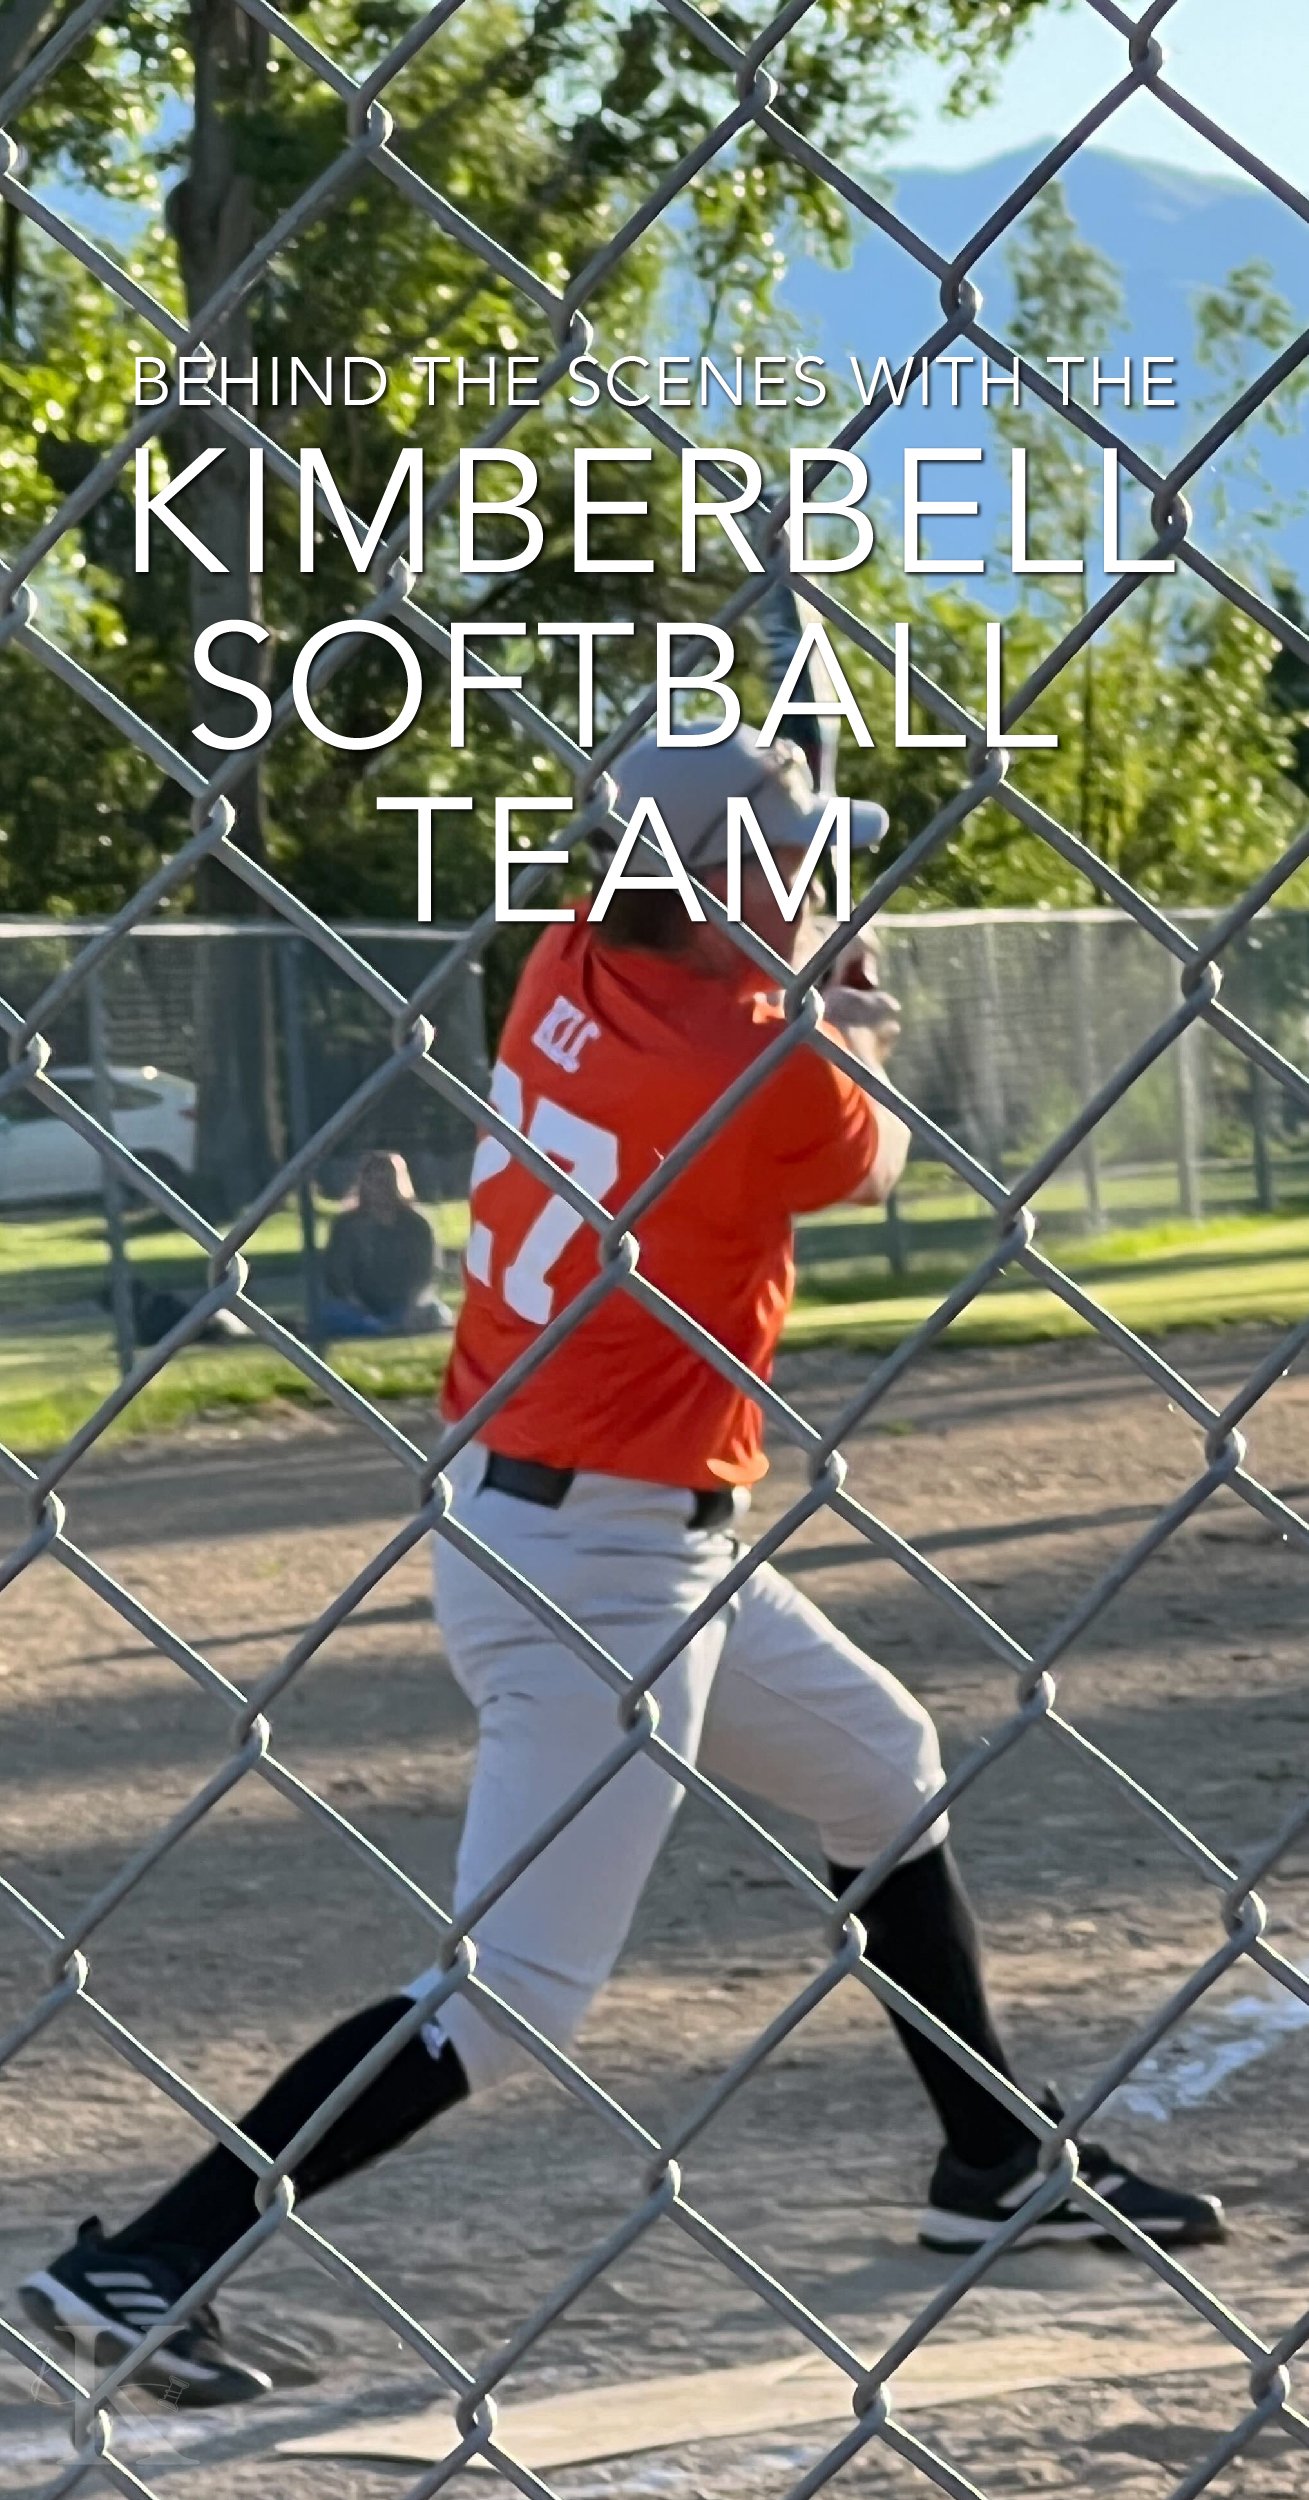 Kimberbell-Softball-Team-Social-Image-Blog-01